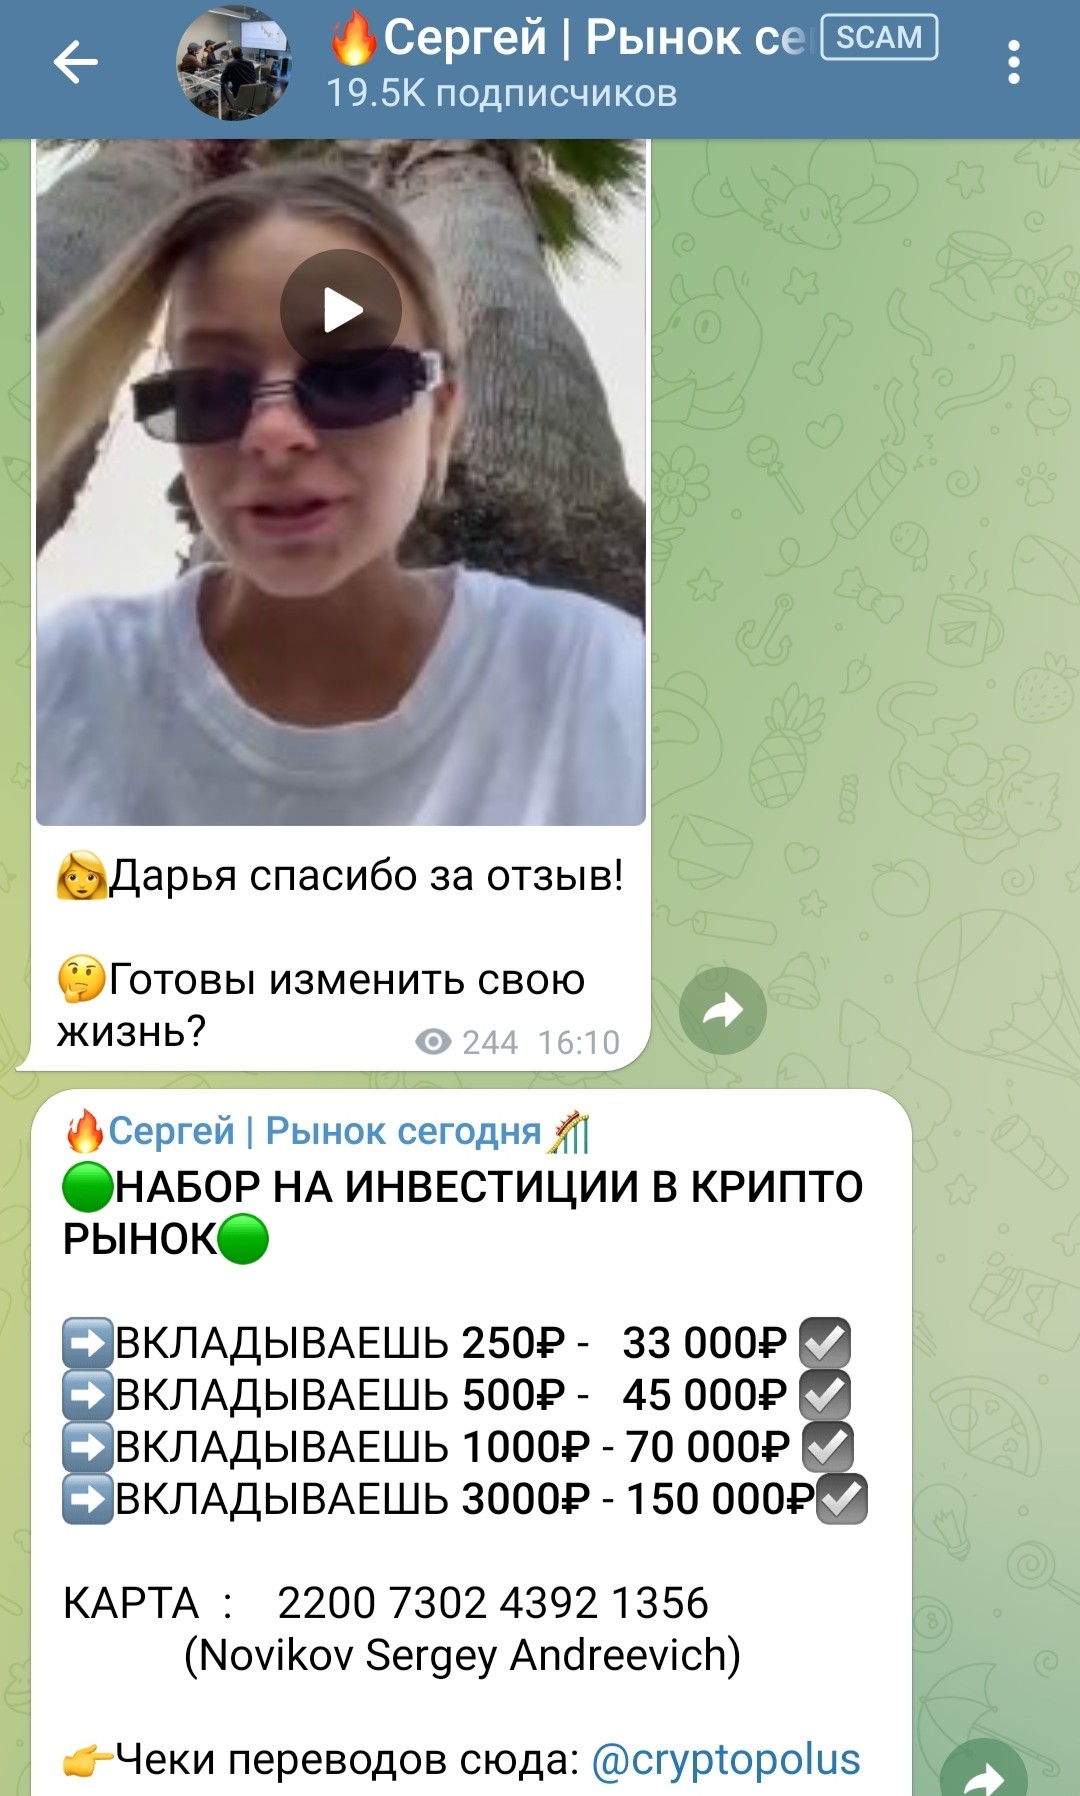 Телеграм Сергей Рынок Сегодня условия работы